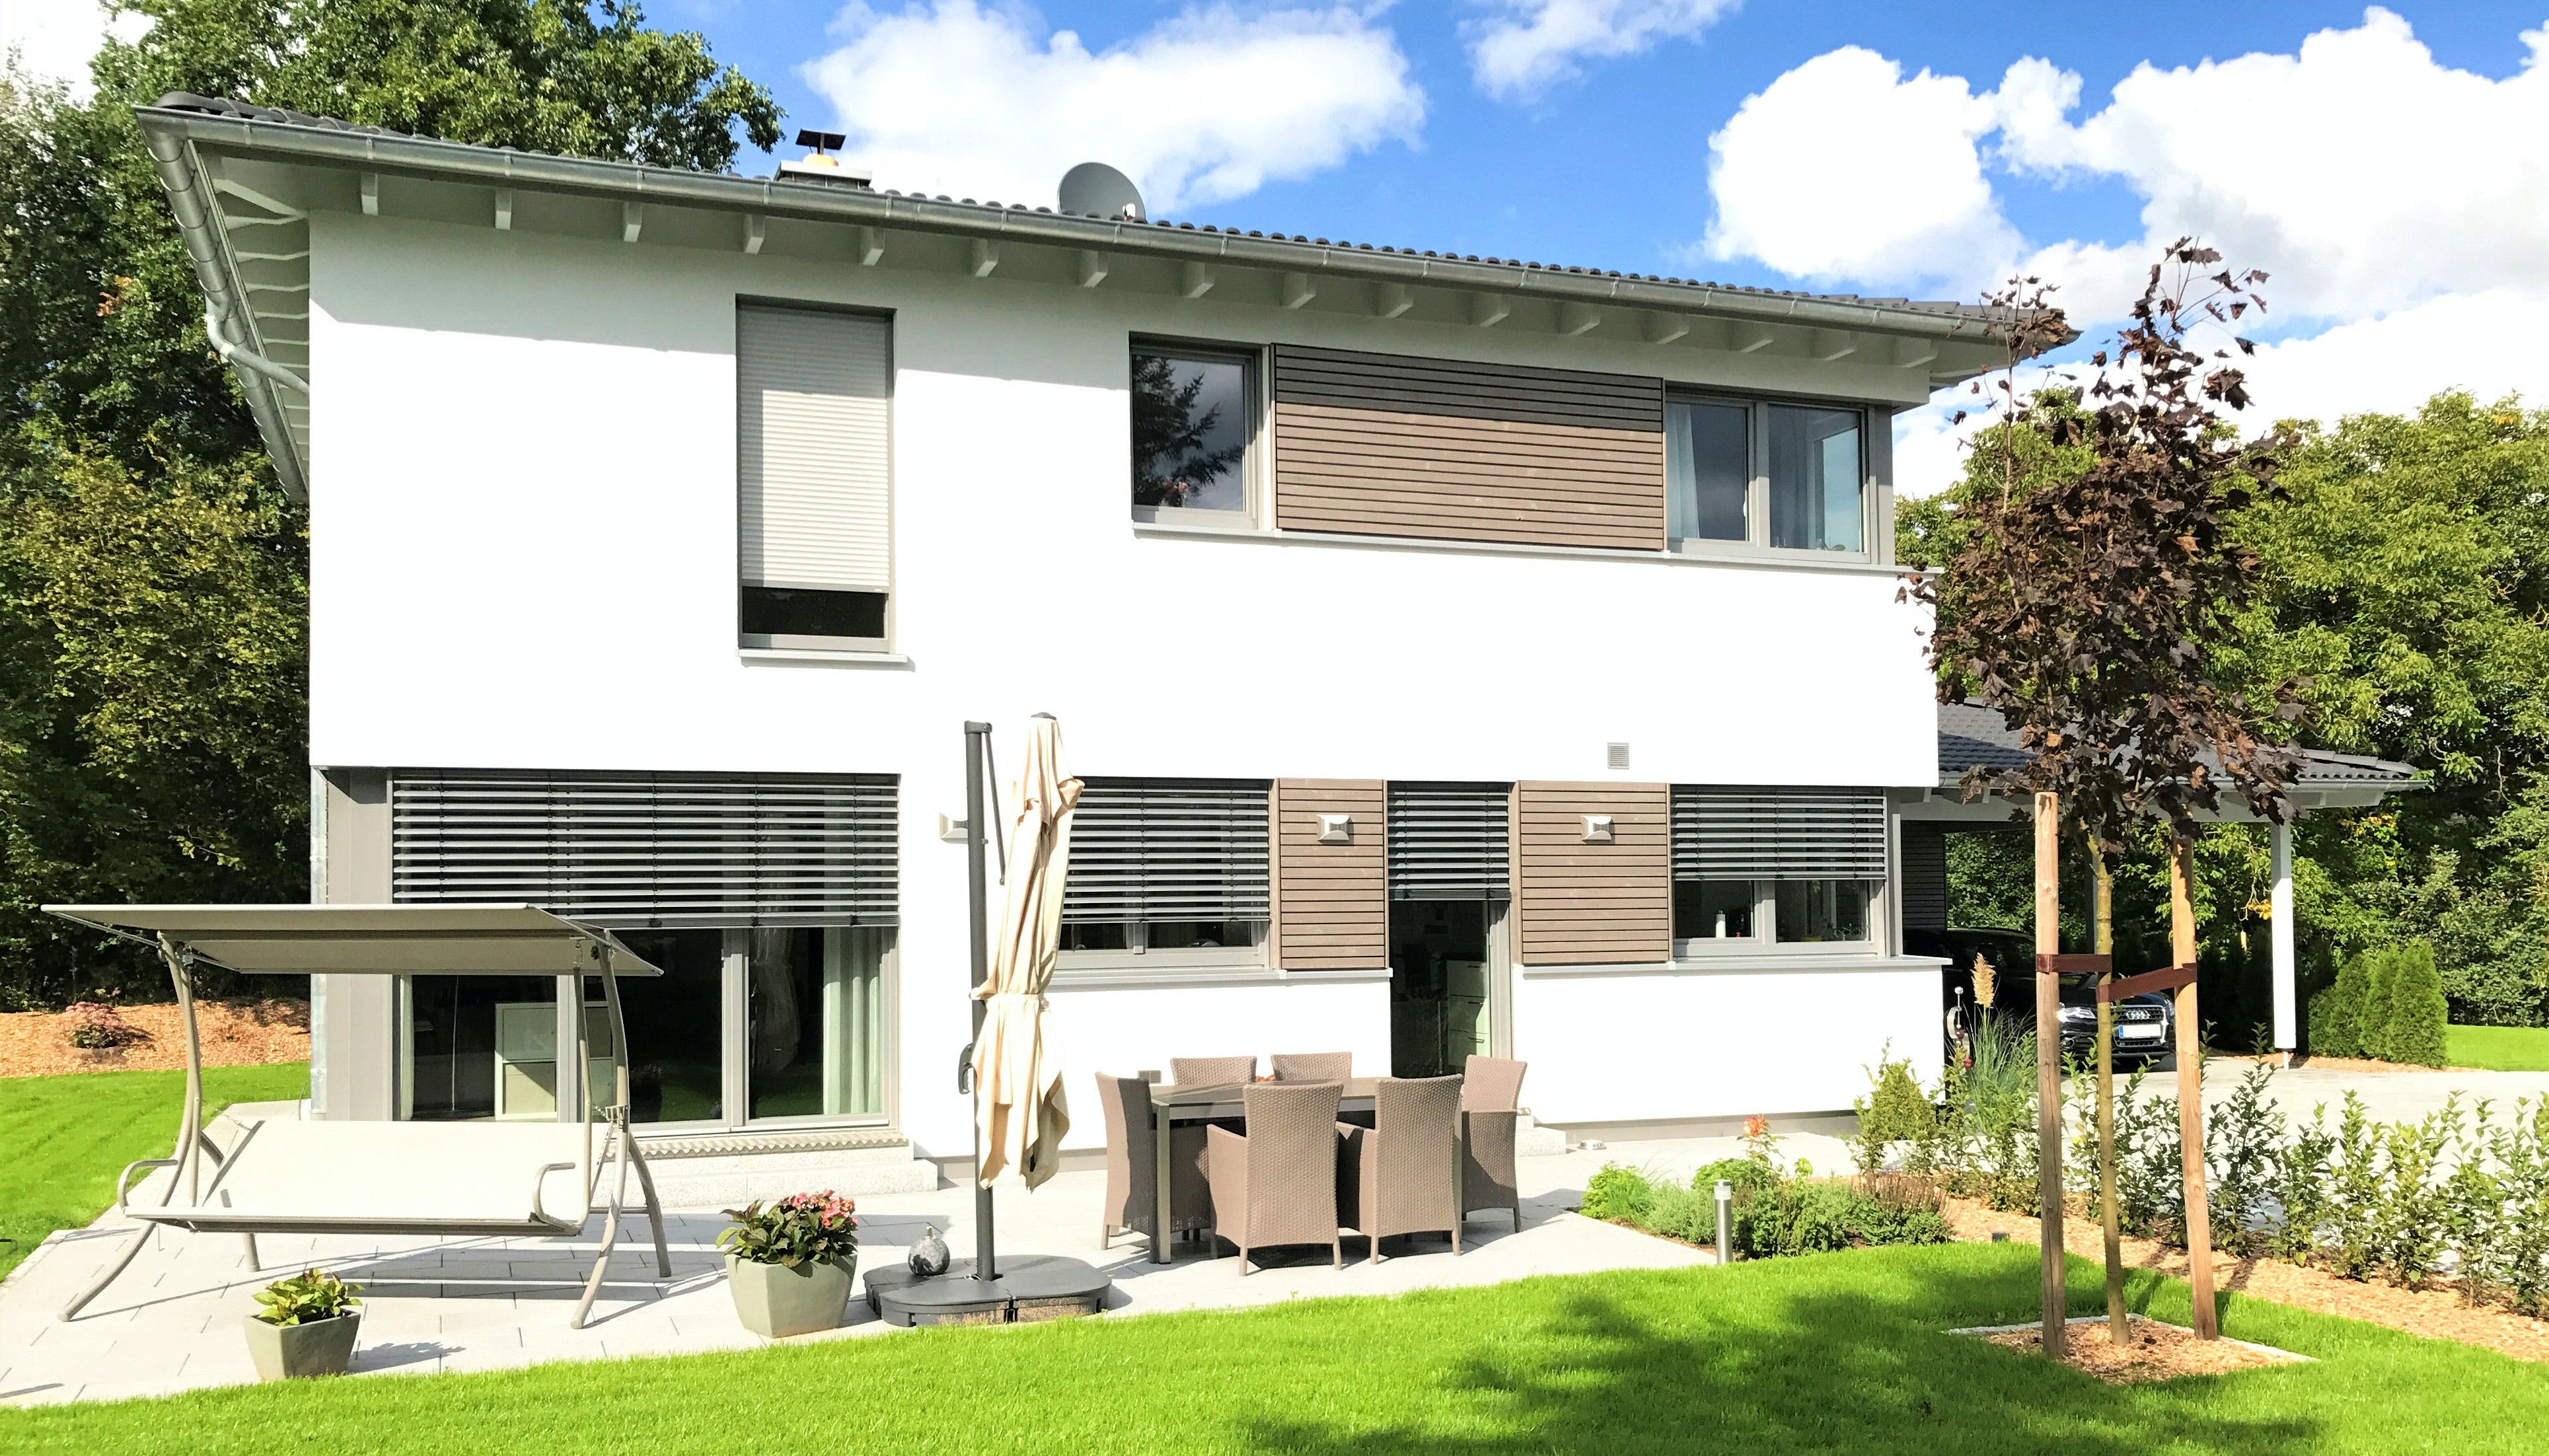 Fertighaus Einfamilienhaus Walmdach mit Carport & Geräteschuppen von Ziegler Haus Schlüsselfertig ab 410000€, Außenansicht 1